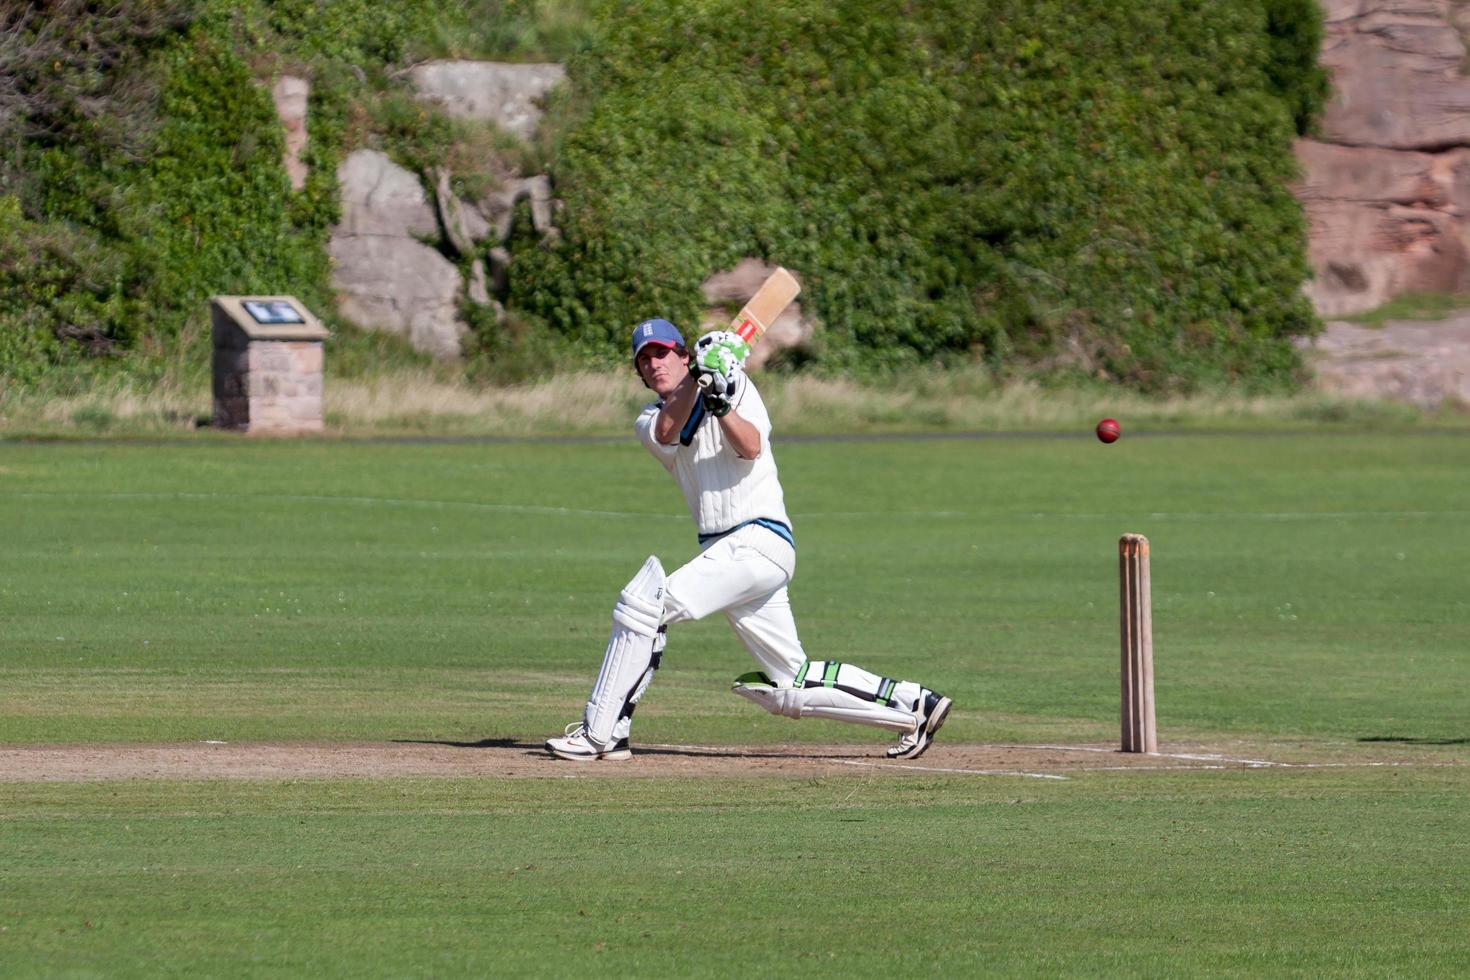 bamburgh, Northumberland, Regno Unito, 2010. giocando a cricket sul green foto